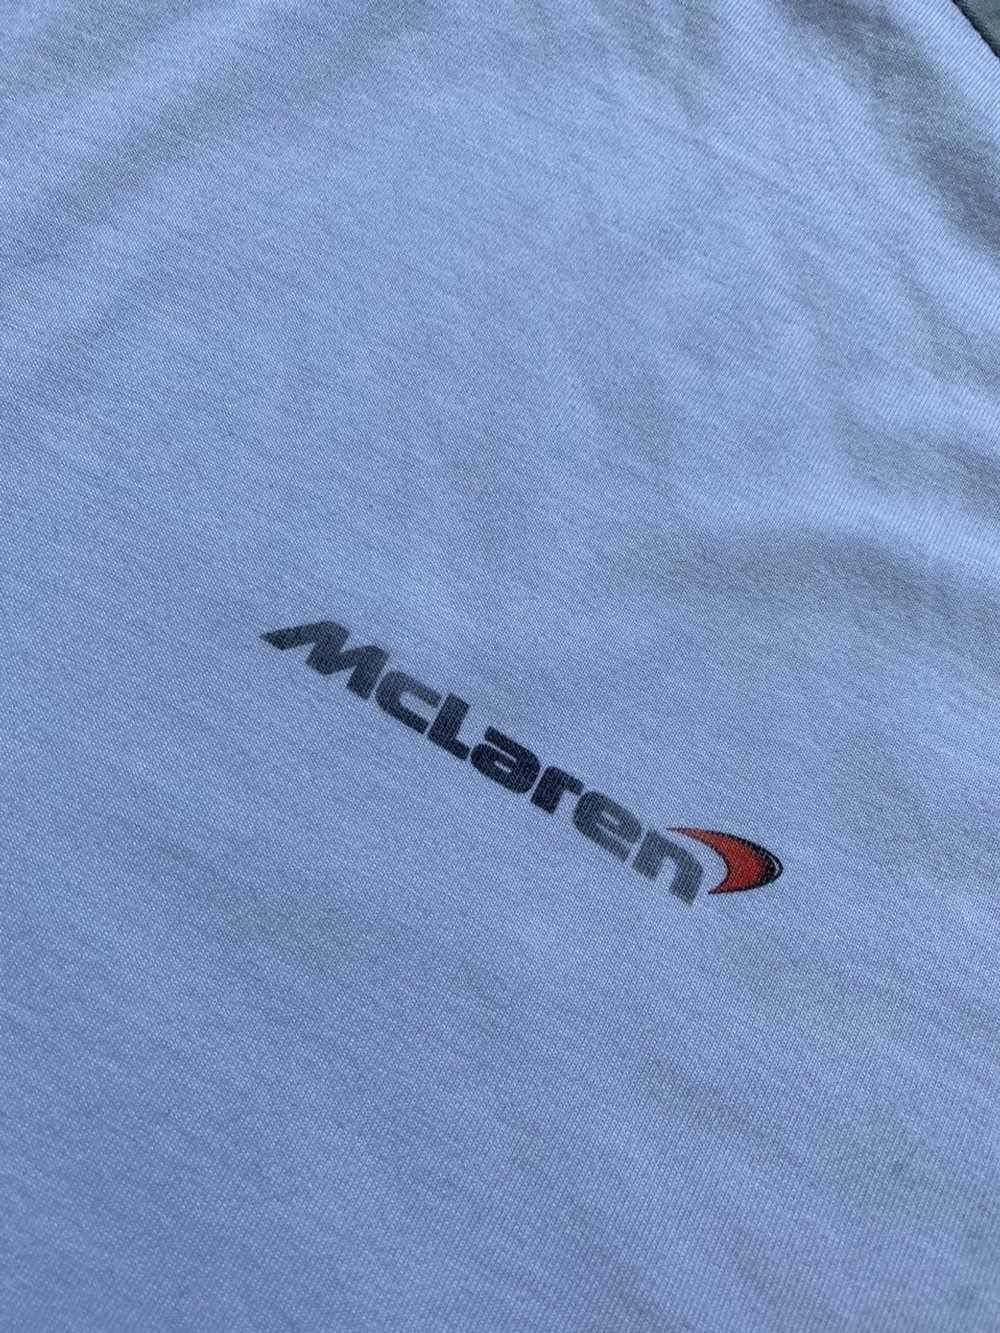 Malcolm McLaren × Mercedes Benz × Vintage Vintage… - image 3